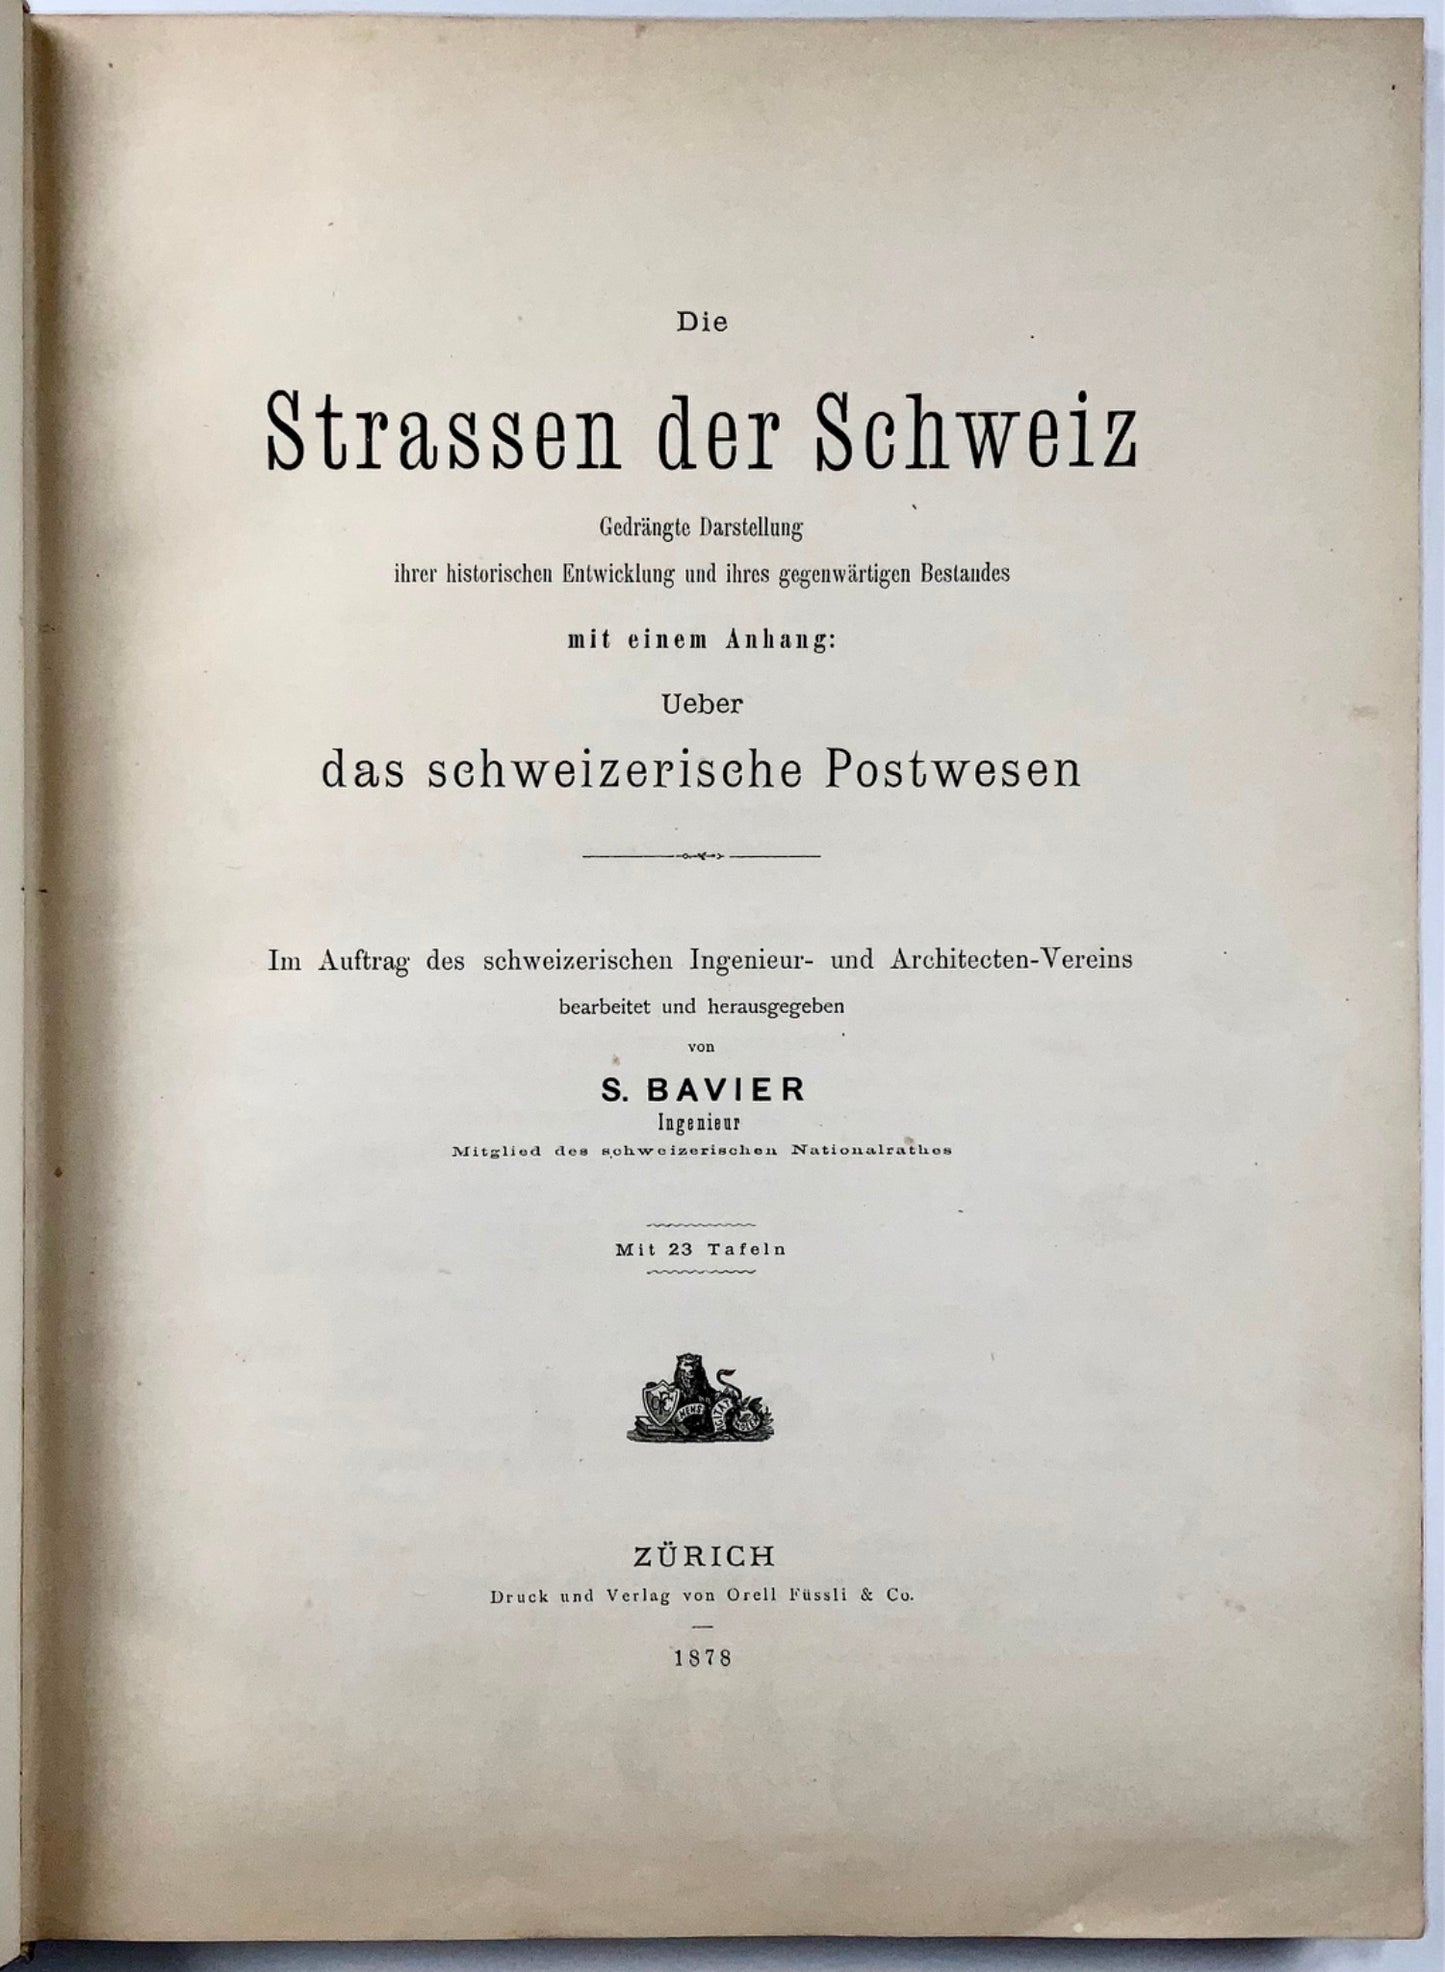 1878 Travaux classiques sur la construction de routes alpines et la Poste Suisse